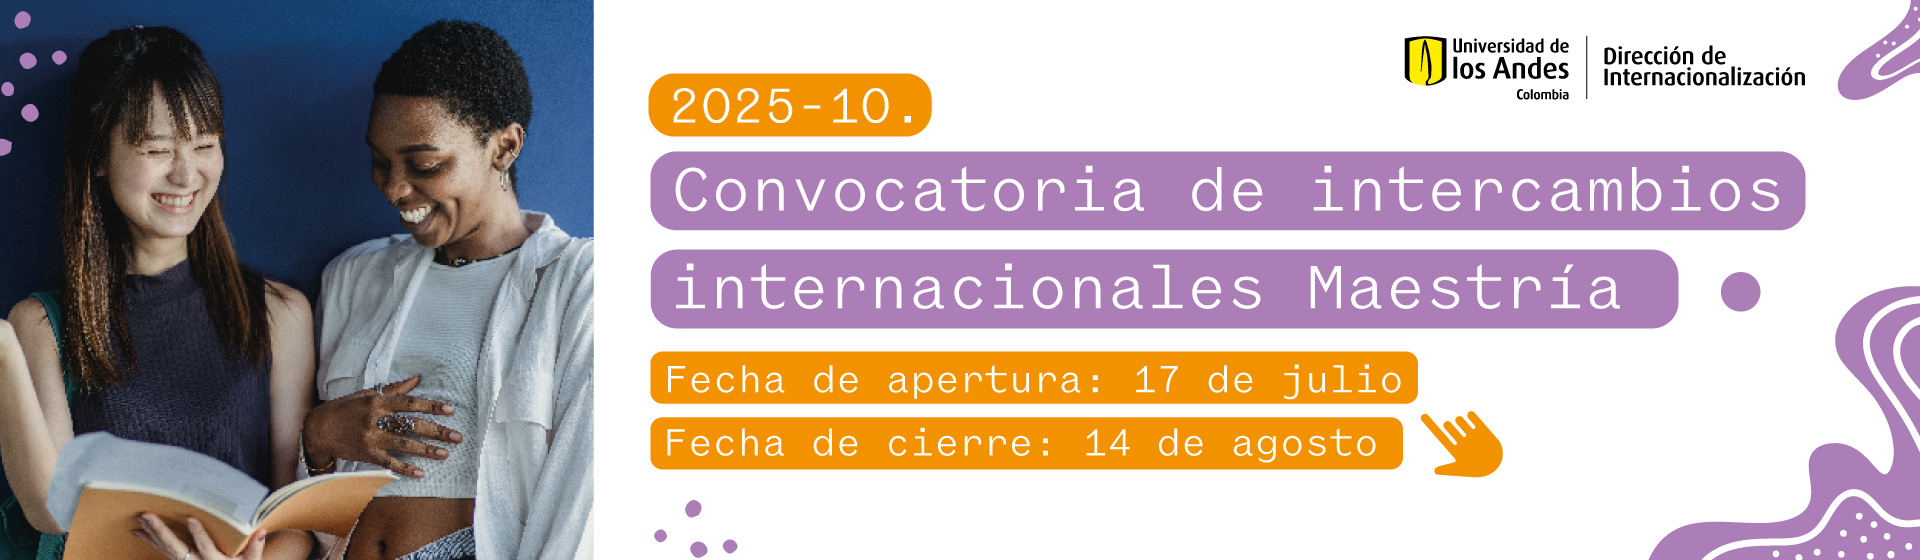 Convocatoria de Intercambios de Maestría - 202510